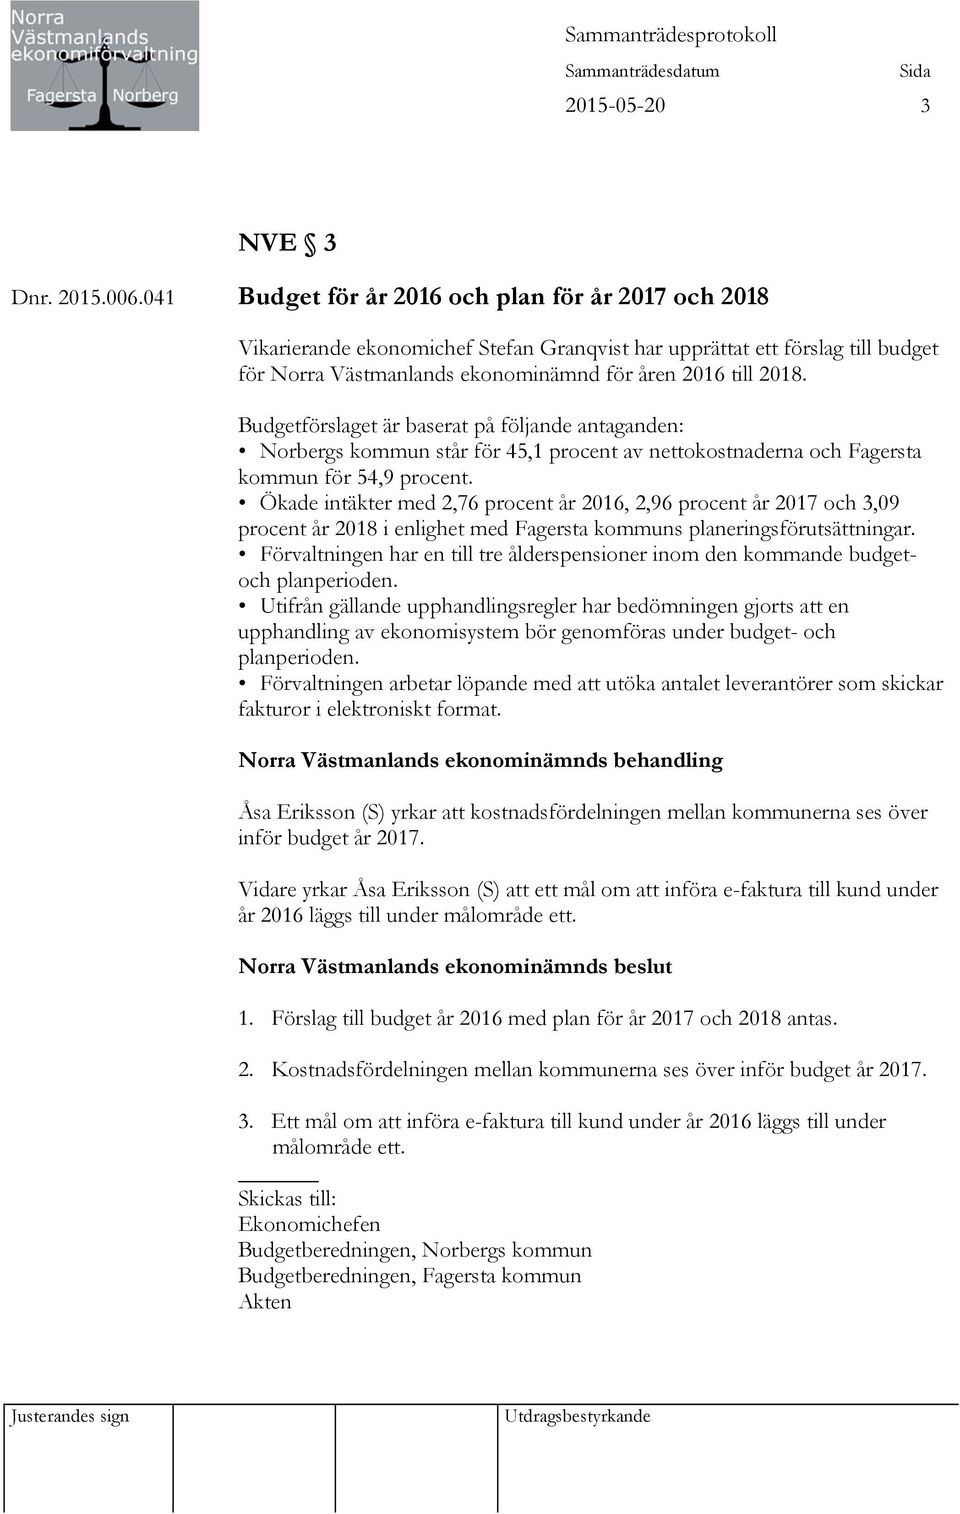 Budgetförslaget är baserat på följande antaganden: Norbergs kommun står för 45,1 procent av nettokostnaderna och Fagersta kommun för 54,9 procent.